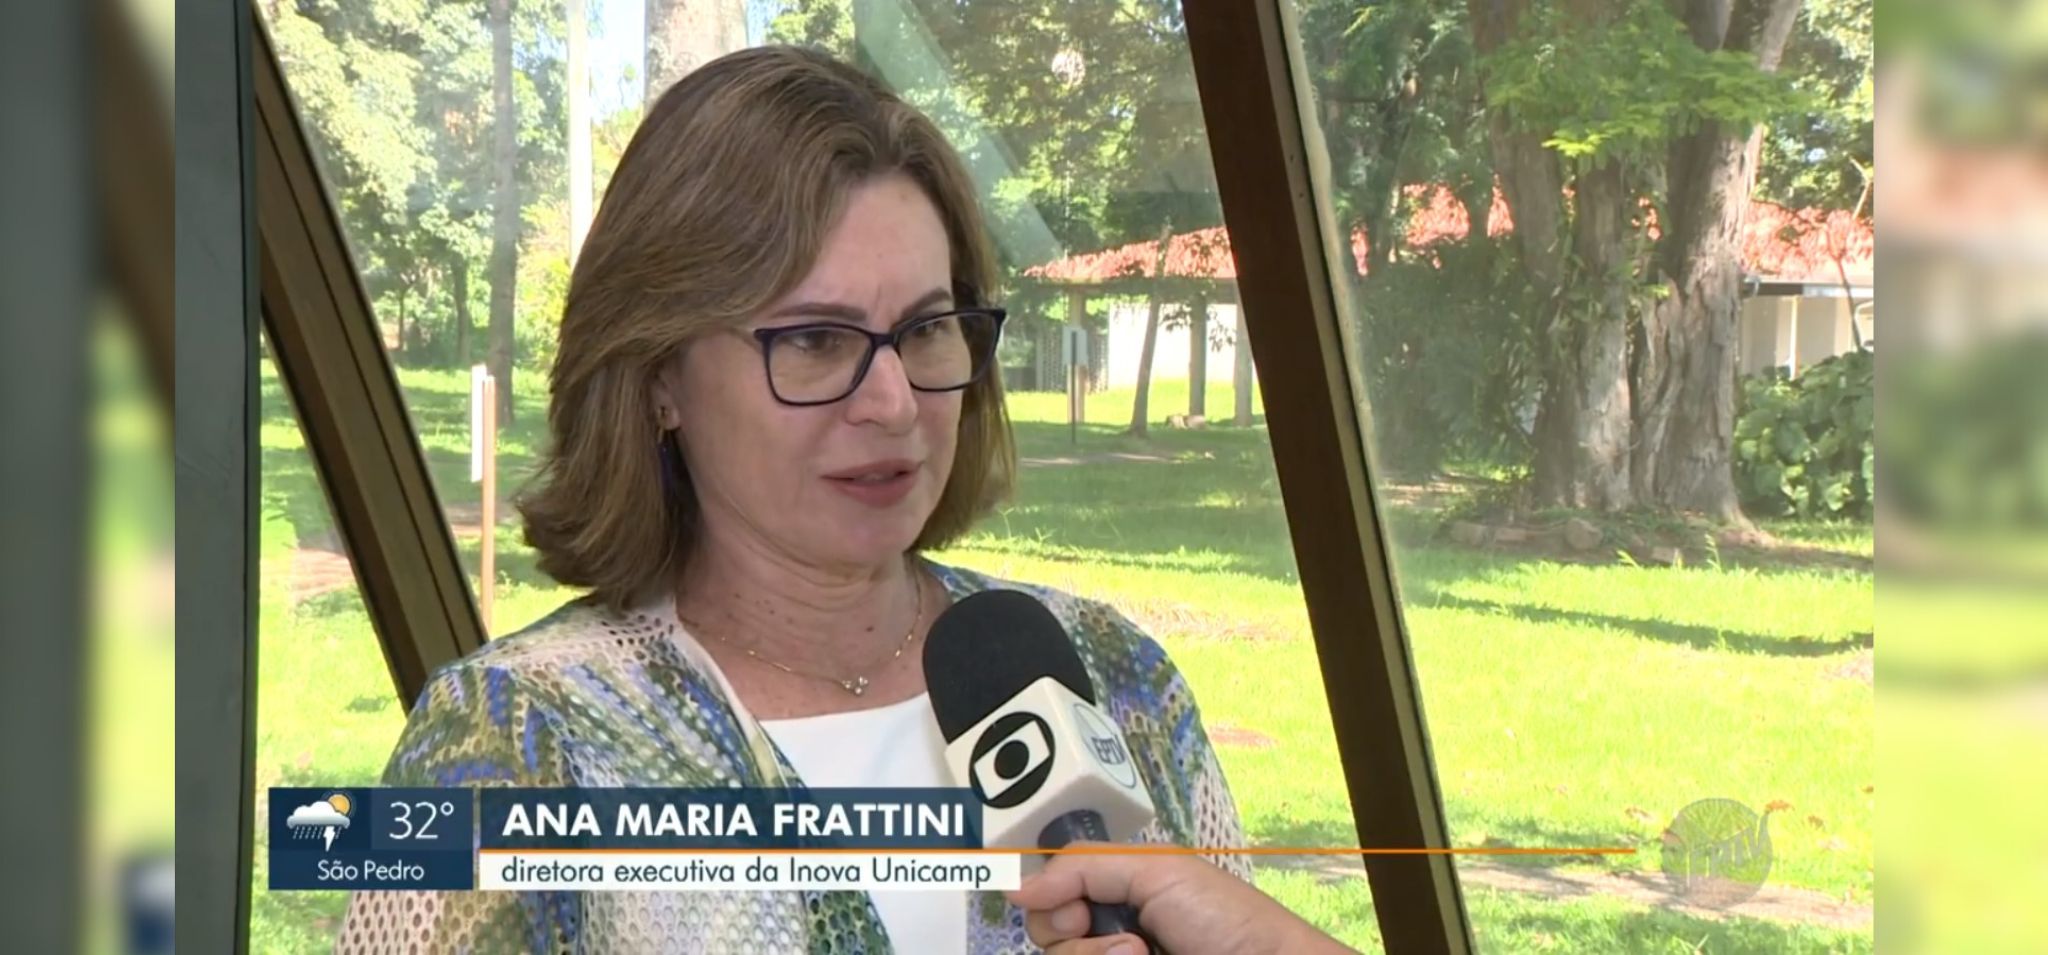 Captura de tela, Ana Frattini, diretora-executiva da Inova Unicamp, dá entrevista para a EPTV Campinas. Fim da descrição.